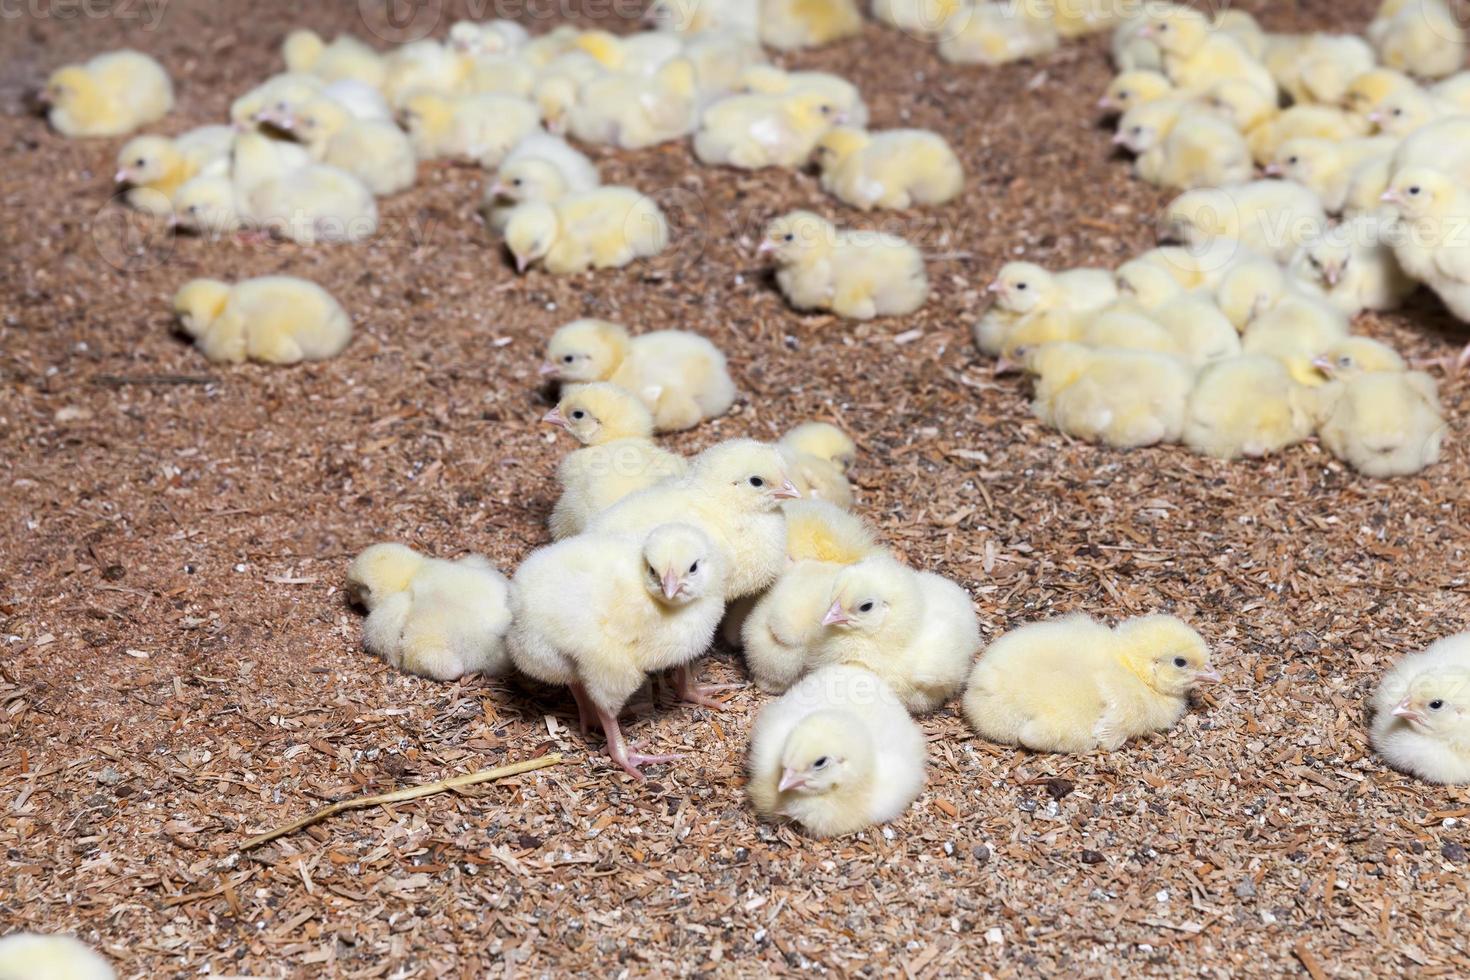 pollitos de pollo en una granja avícola, de cerca foto